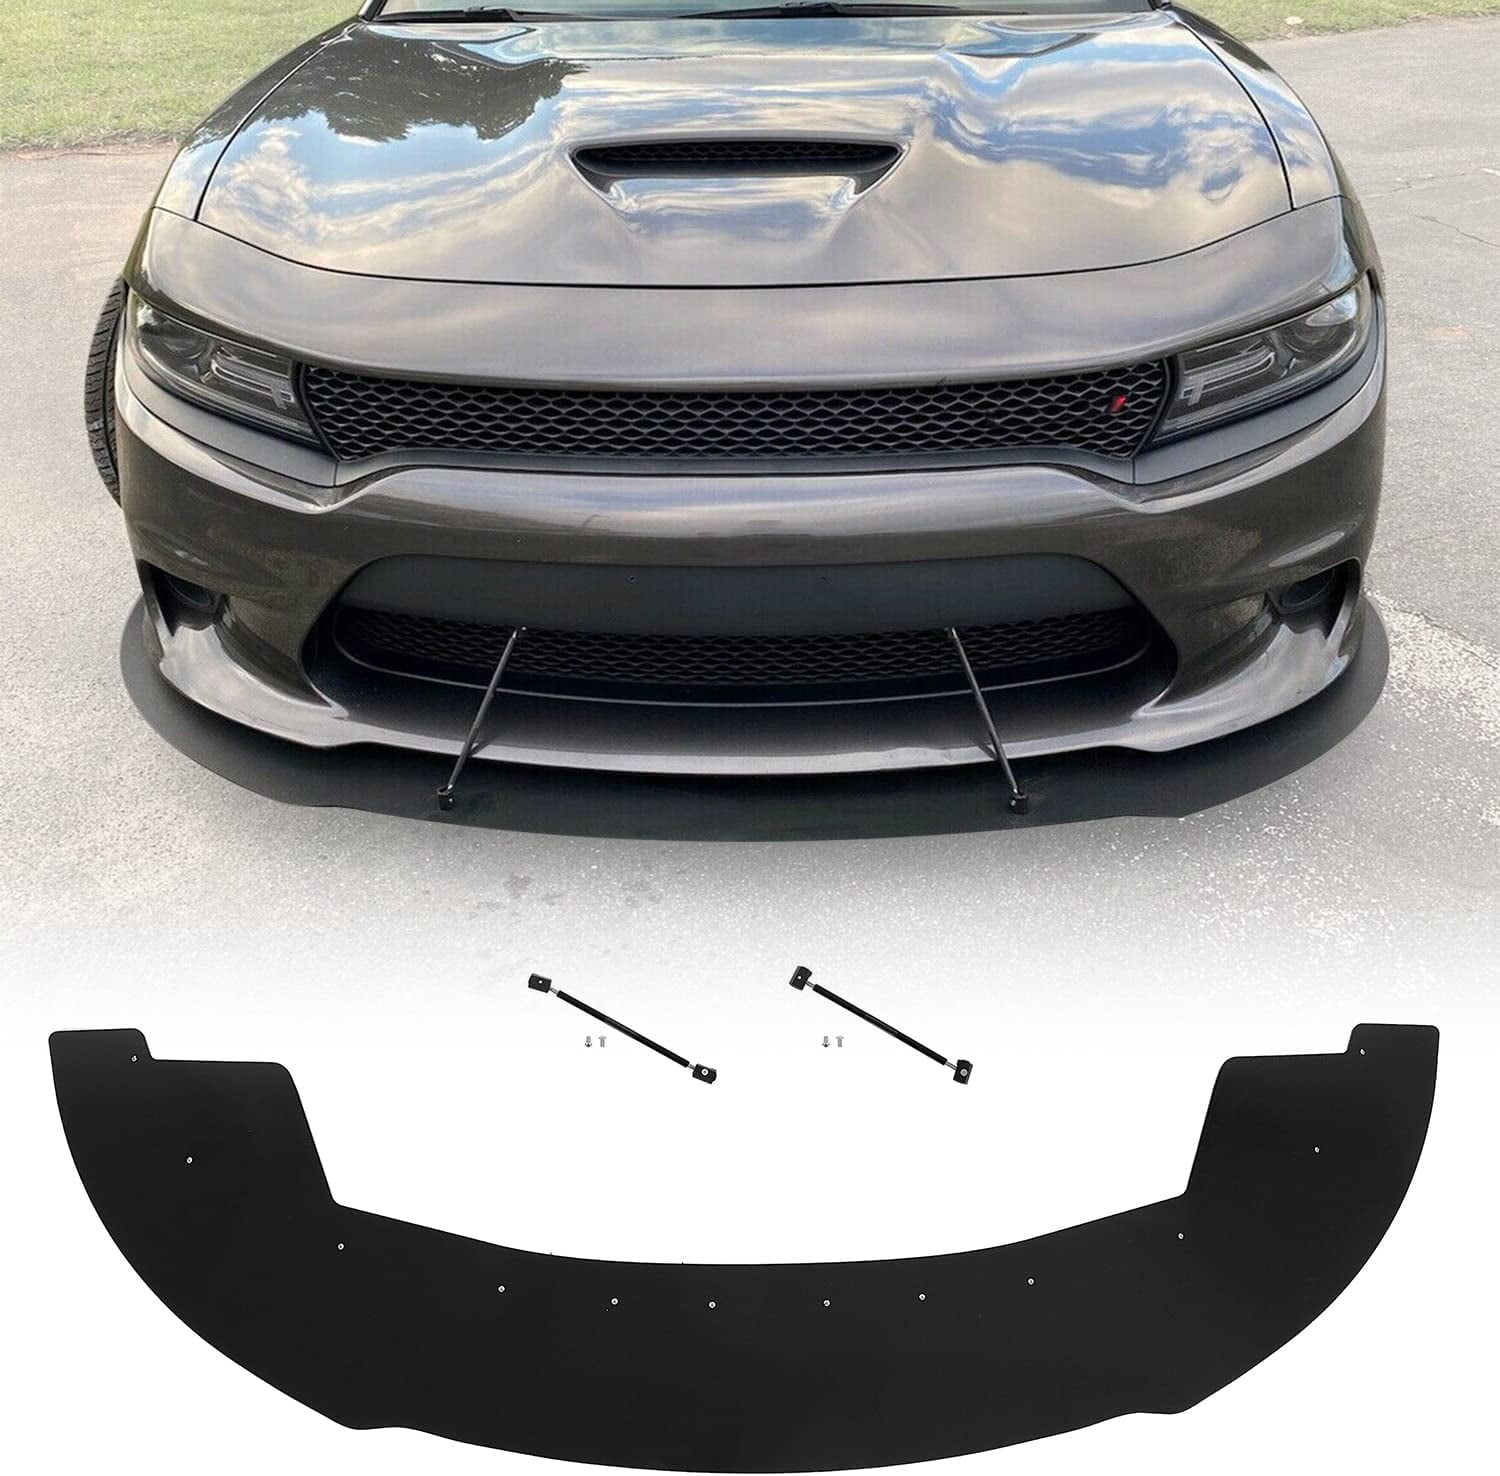 Kojem Front Bumper Lower Lip Splitter Plastic for 2015-2020 Dodge